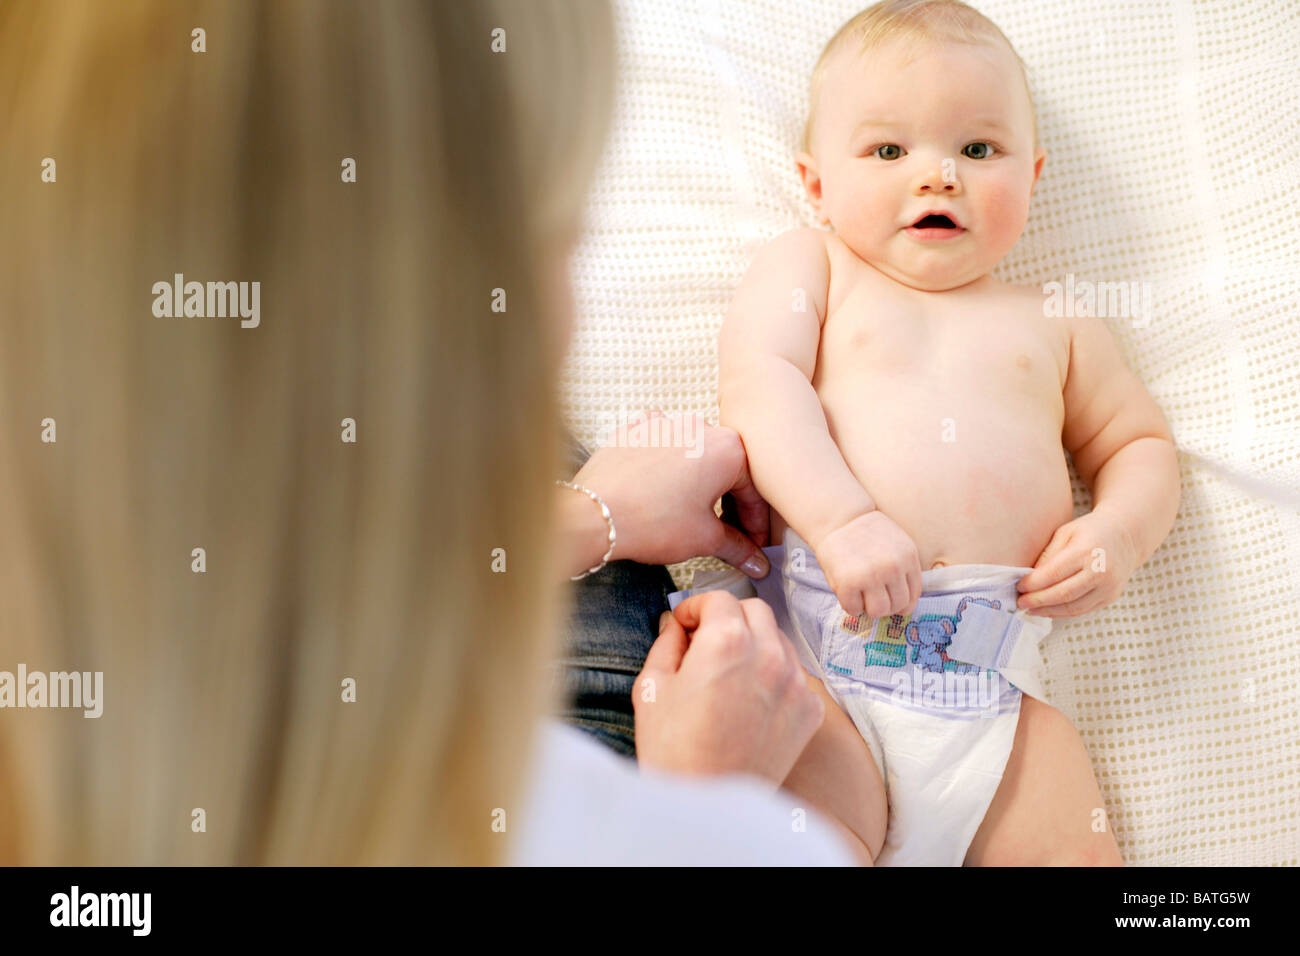 Windel wechseln. Ändern ihr neun Monate altes Baby junge Mutter ist Windel  Stockfotografie - Alamy